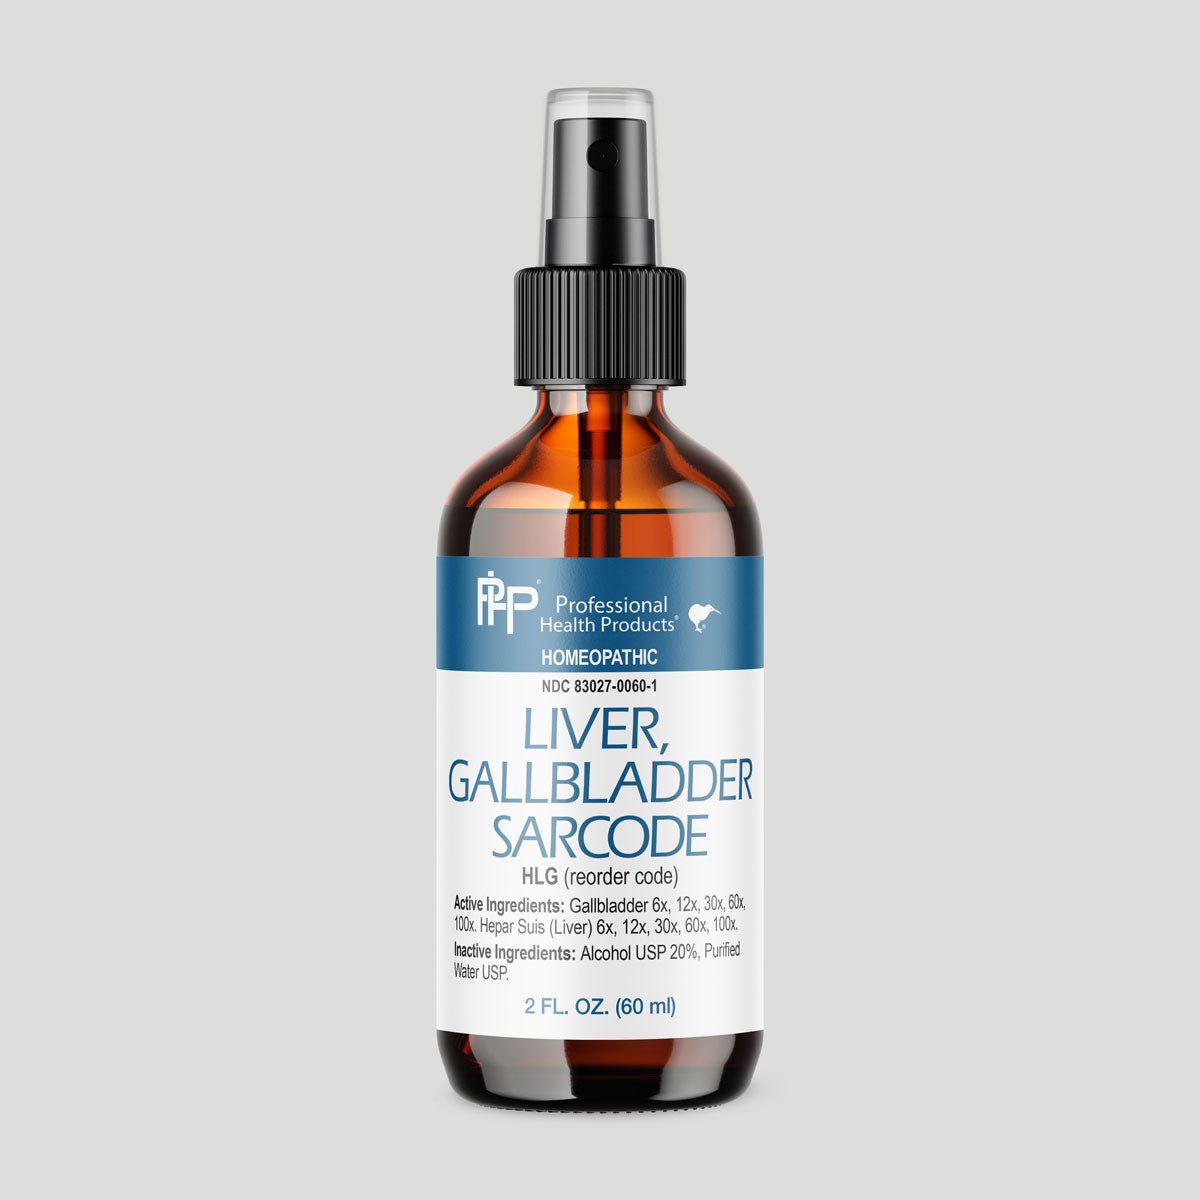 Liver/Gallbladder Sarcode